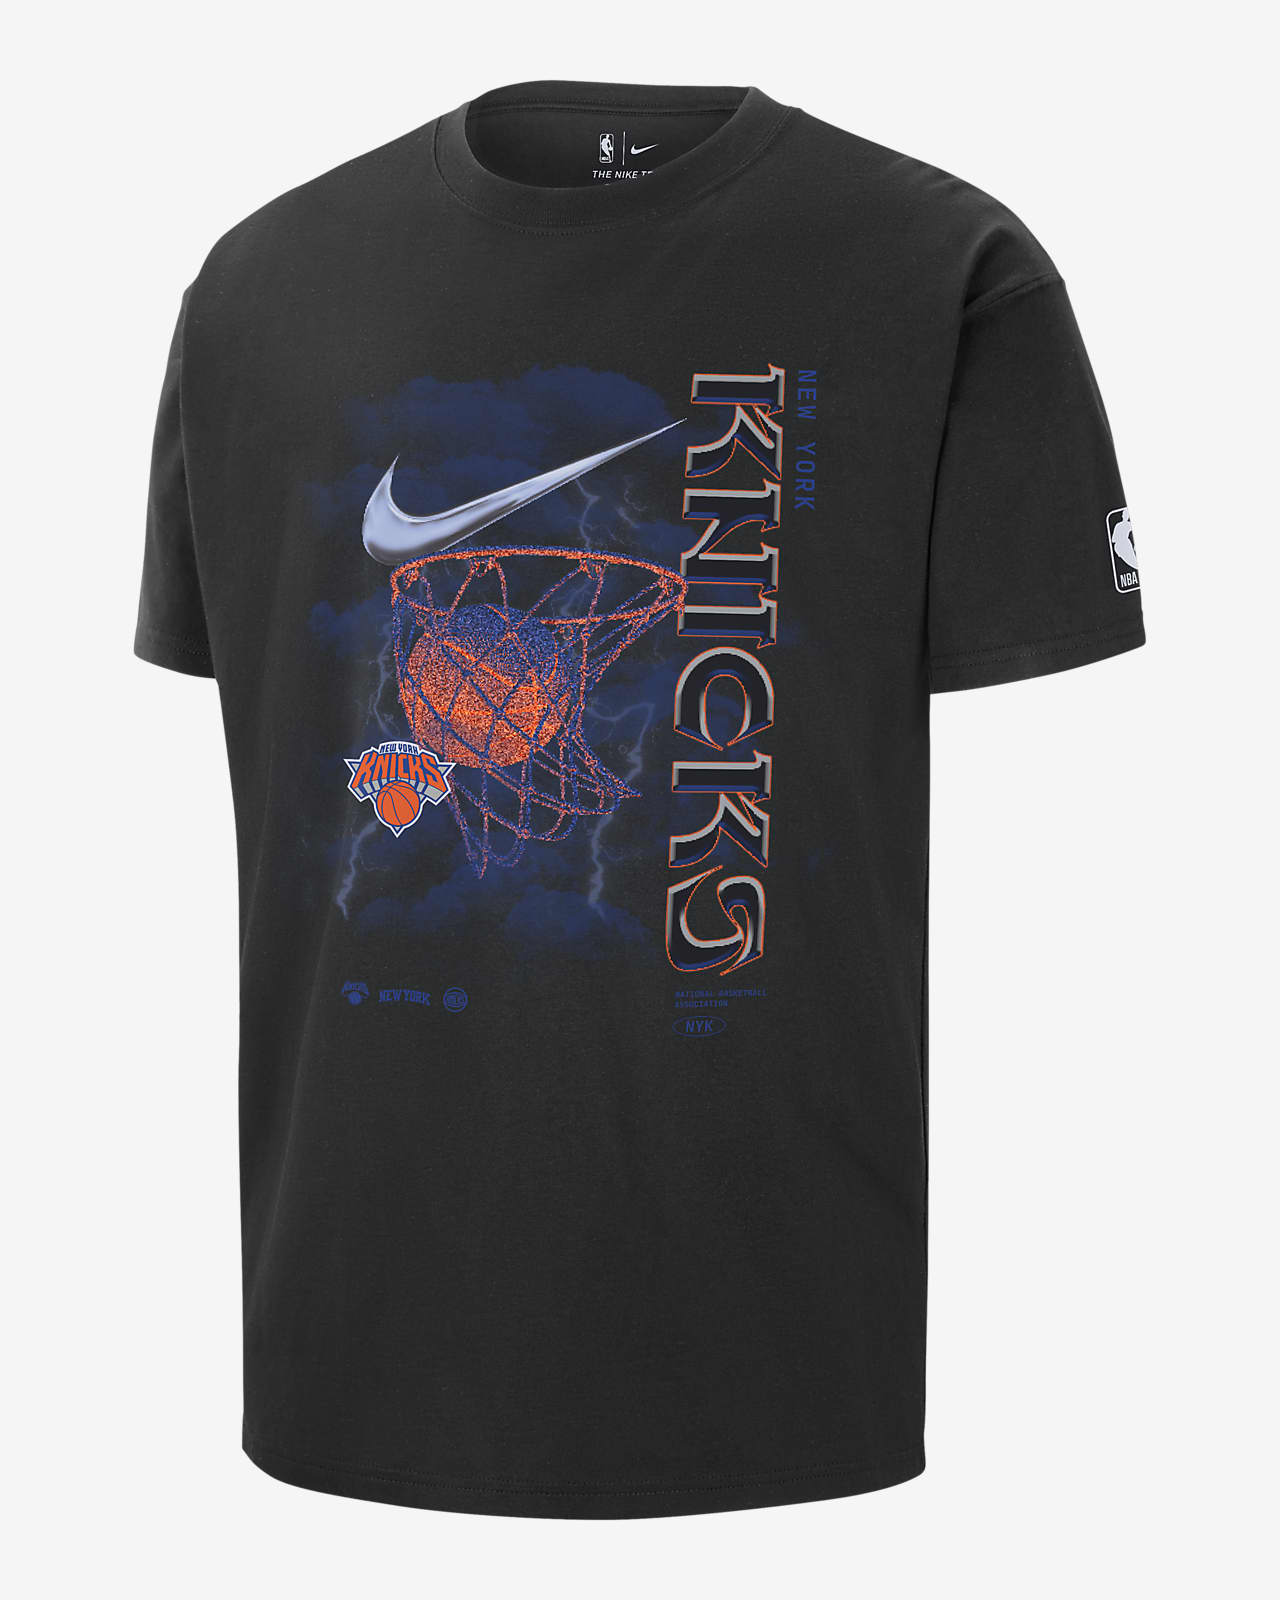 NBA Newyork Knicks Tshirt / XL -  Portugal